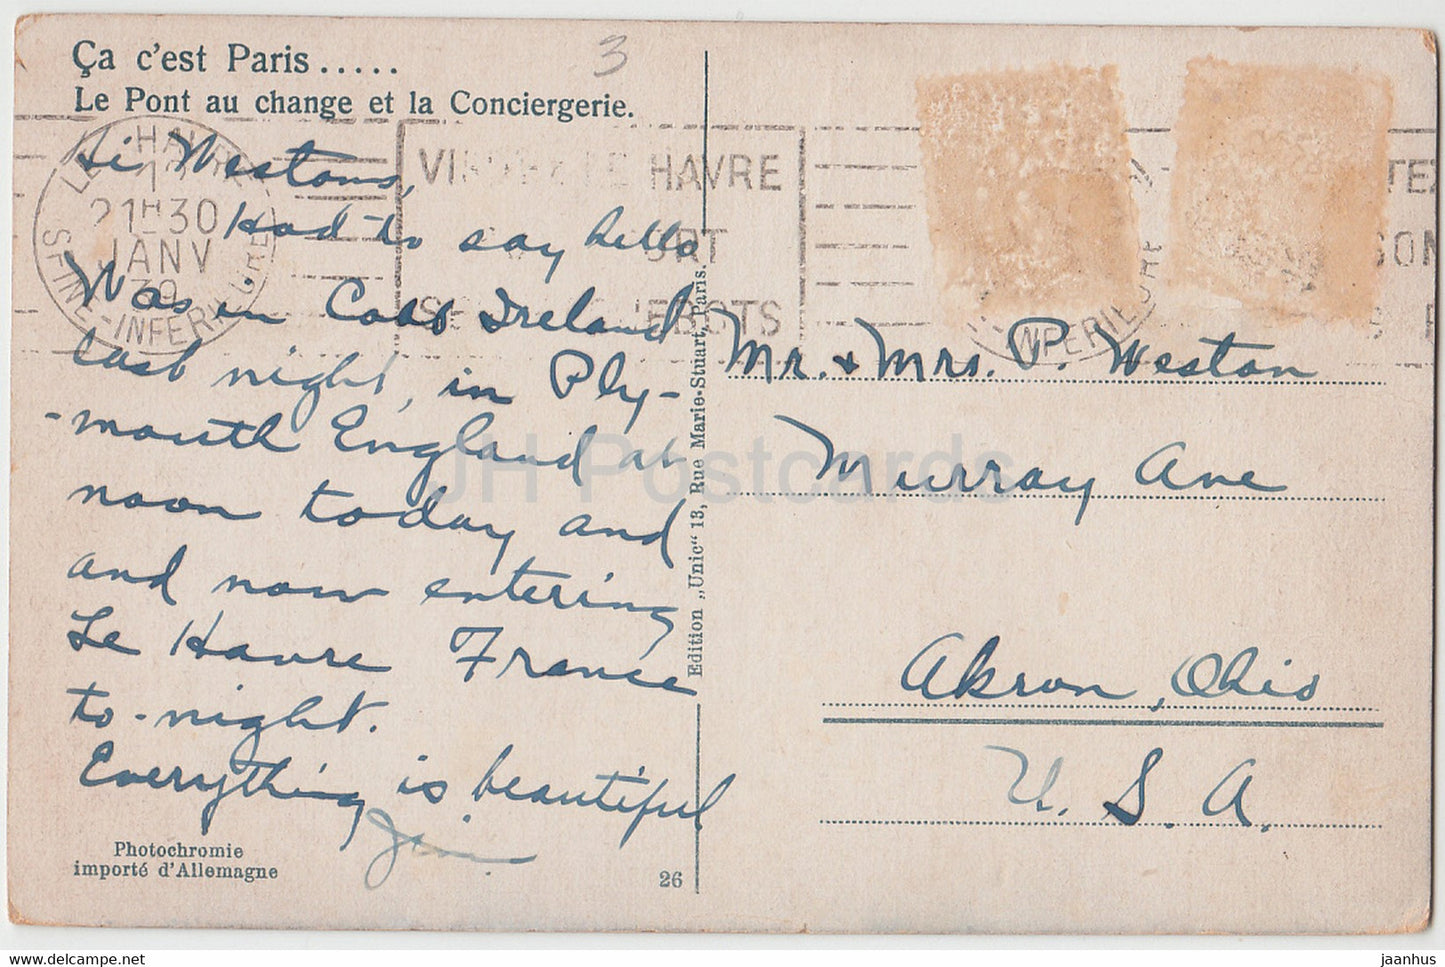 Paris - Le Pont au change et la Conciergerie - Straßenbahn - Brücke - 26 - alte Postkarte - 1939 - Frankreich - gebraucht